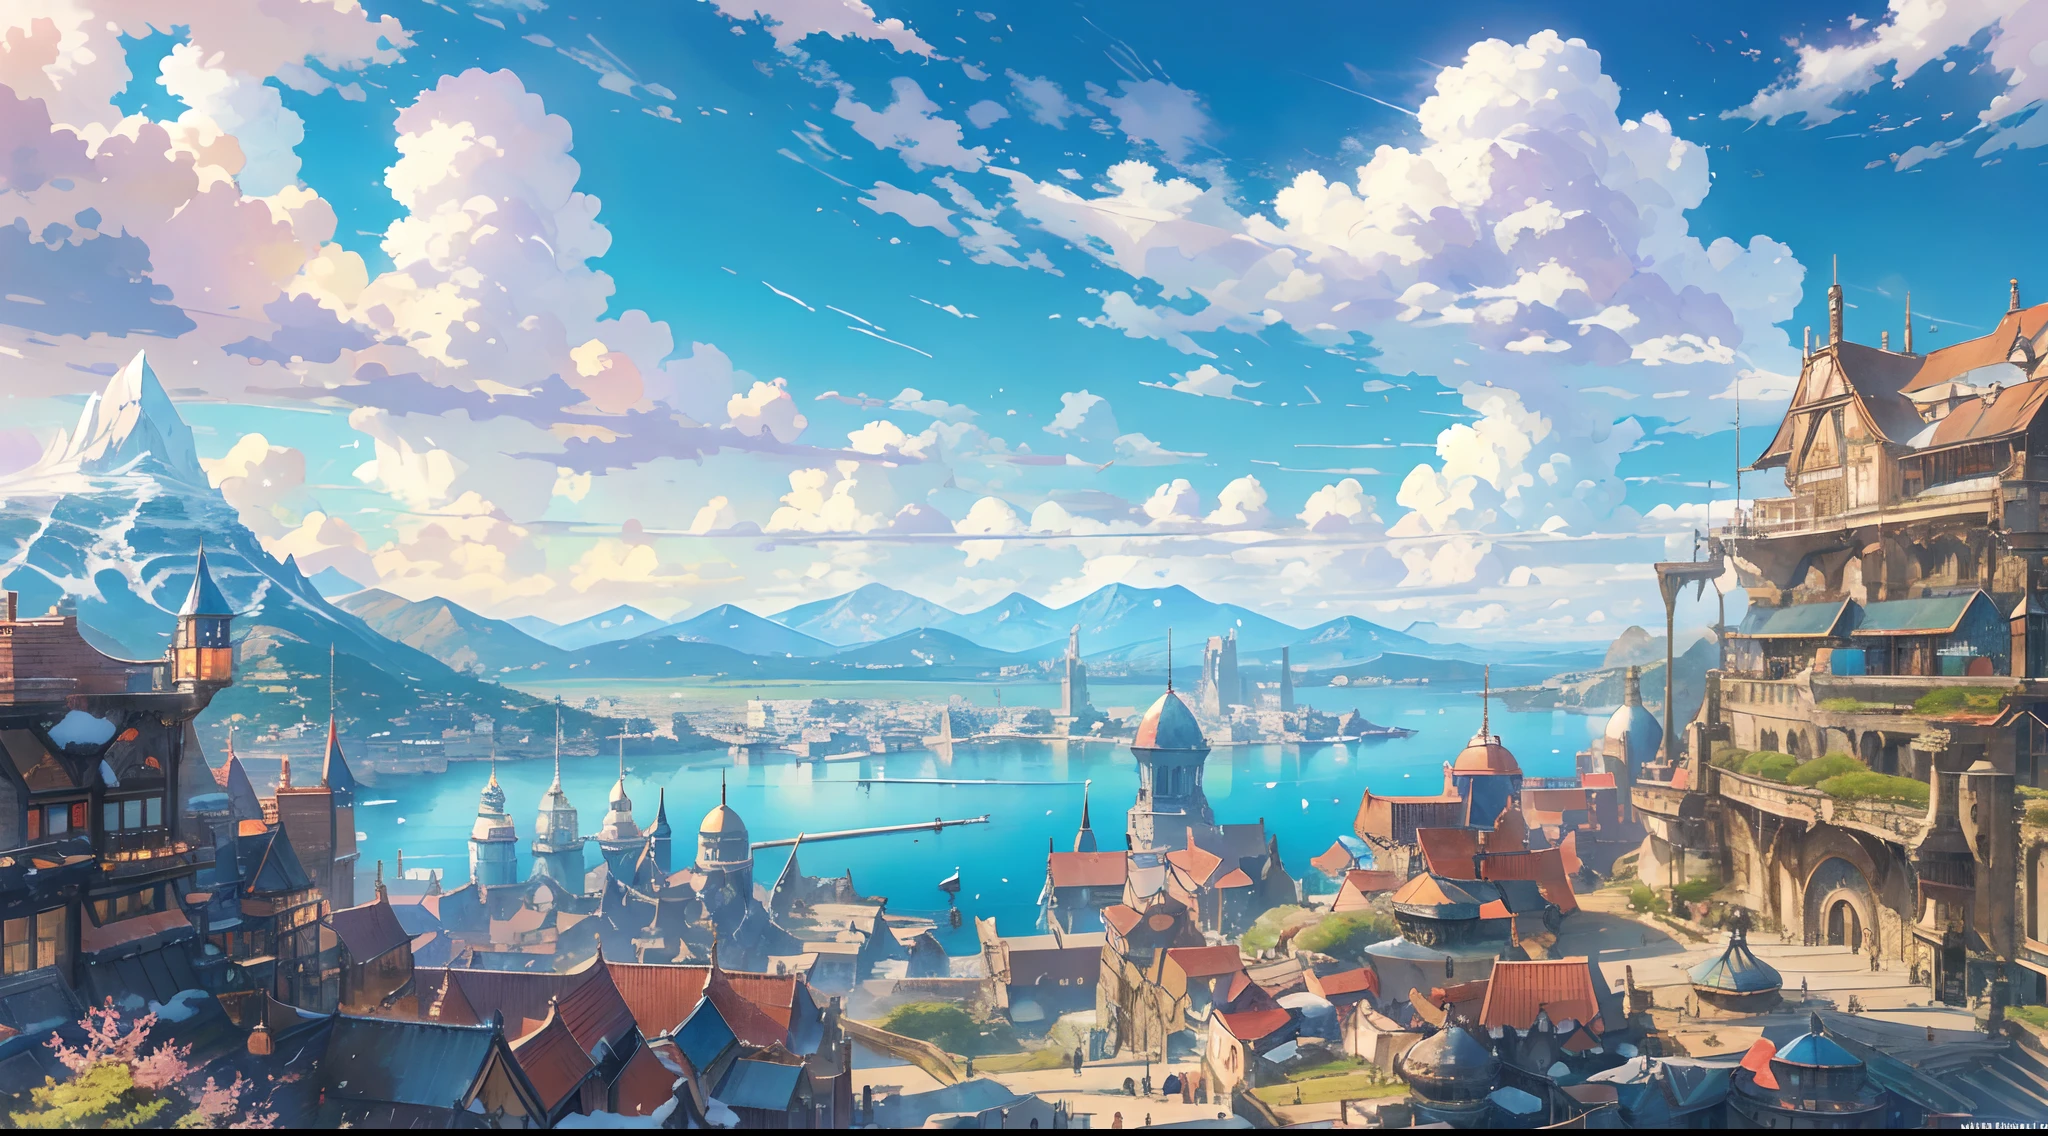 Representa una escena de una ciudad portuaria en un mundo de fantasía donde los barcos permanecen en el muelle y la silueta de una montaña nevada se puede ver desde lejos durante el día y el cielo está muy claro con la brillante luz del sol en primavera., 8k, color brillante, Intense vivid color, cielo azul celeste, nubes blancas, HDR, obra de arte, estilo animado, fantasía Final, zelda, Makoto Shinkai, Hayao Miyazaki, Extremo detallado, súper detallado, crujiente, imagen nítida, mejor resultado, iluminación muy detallada y mágica, detalles intrincados de la ciudad, paisaje, proporciones realistas, de la máxima calidad, Obra maestra, exterior, paisaje magico, arquitectura perfecta, edificio perfecto, personaje perfecto